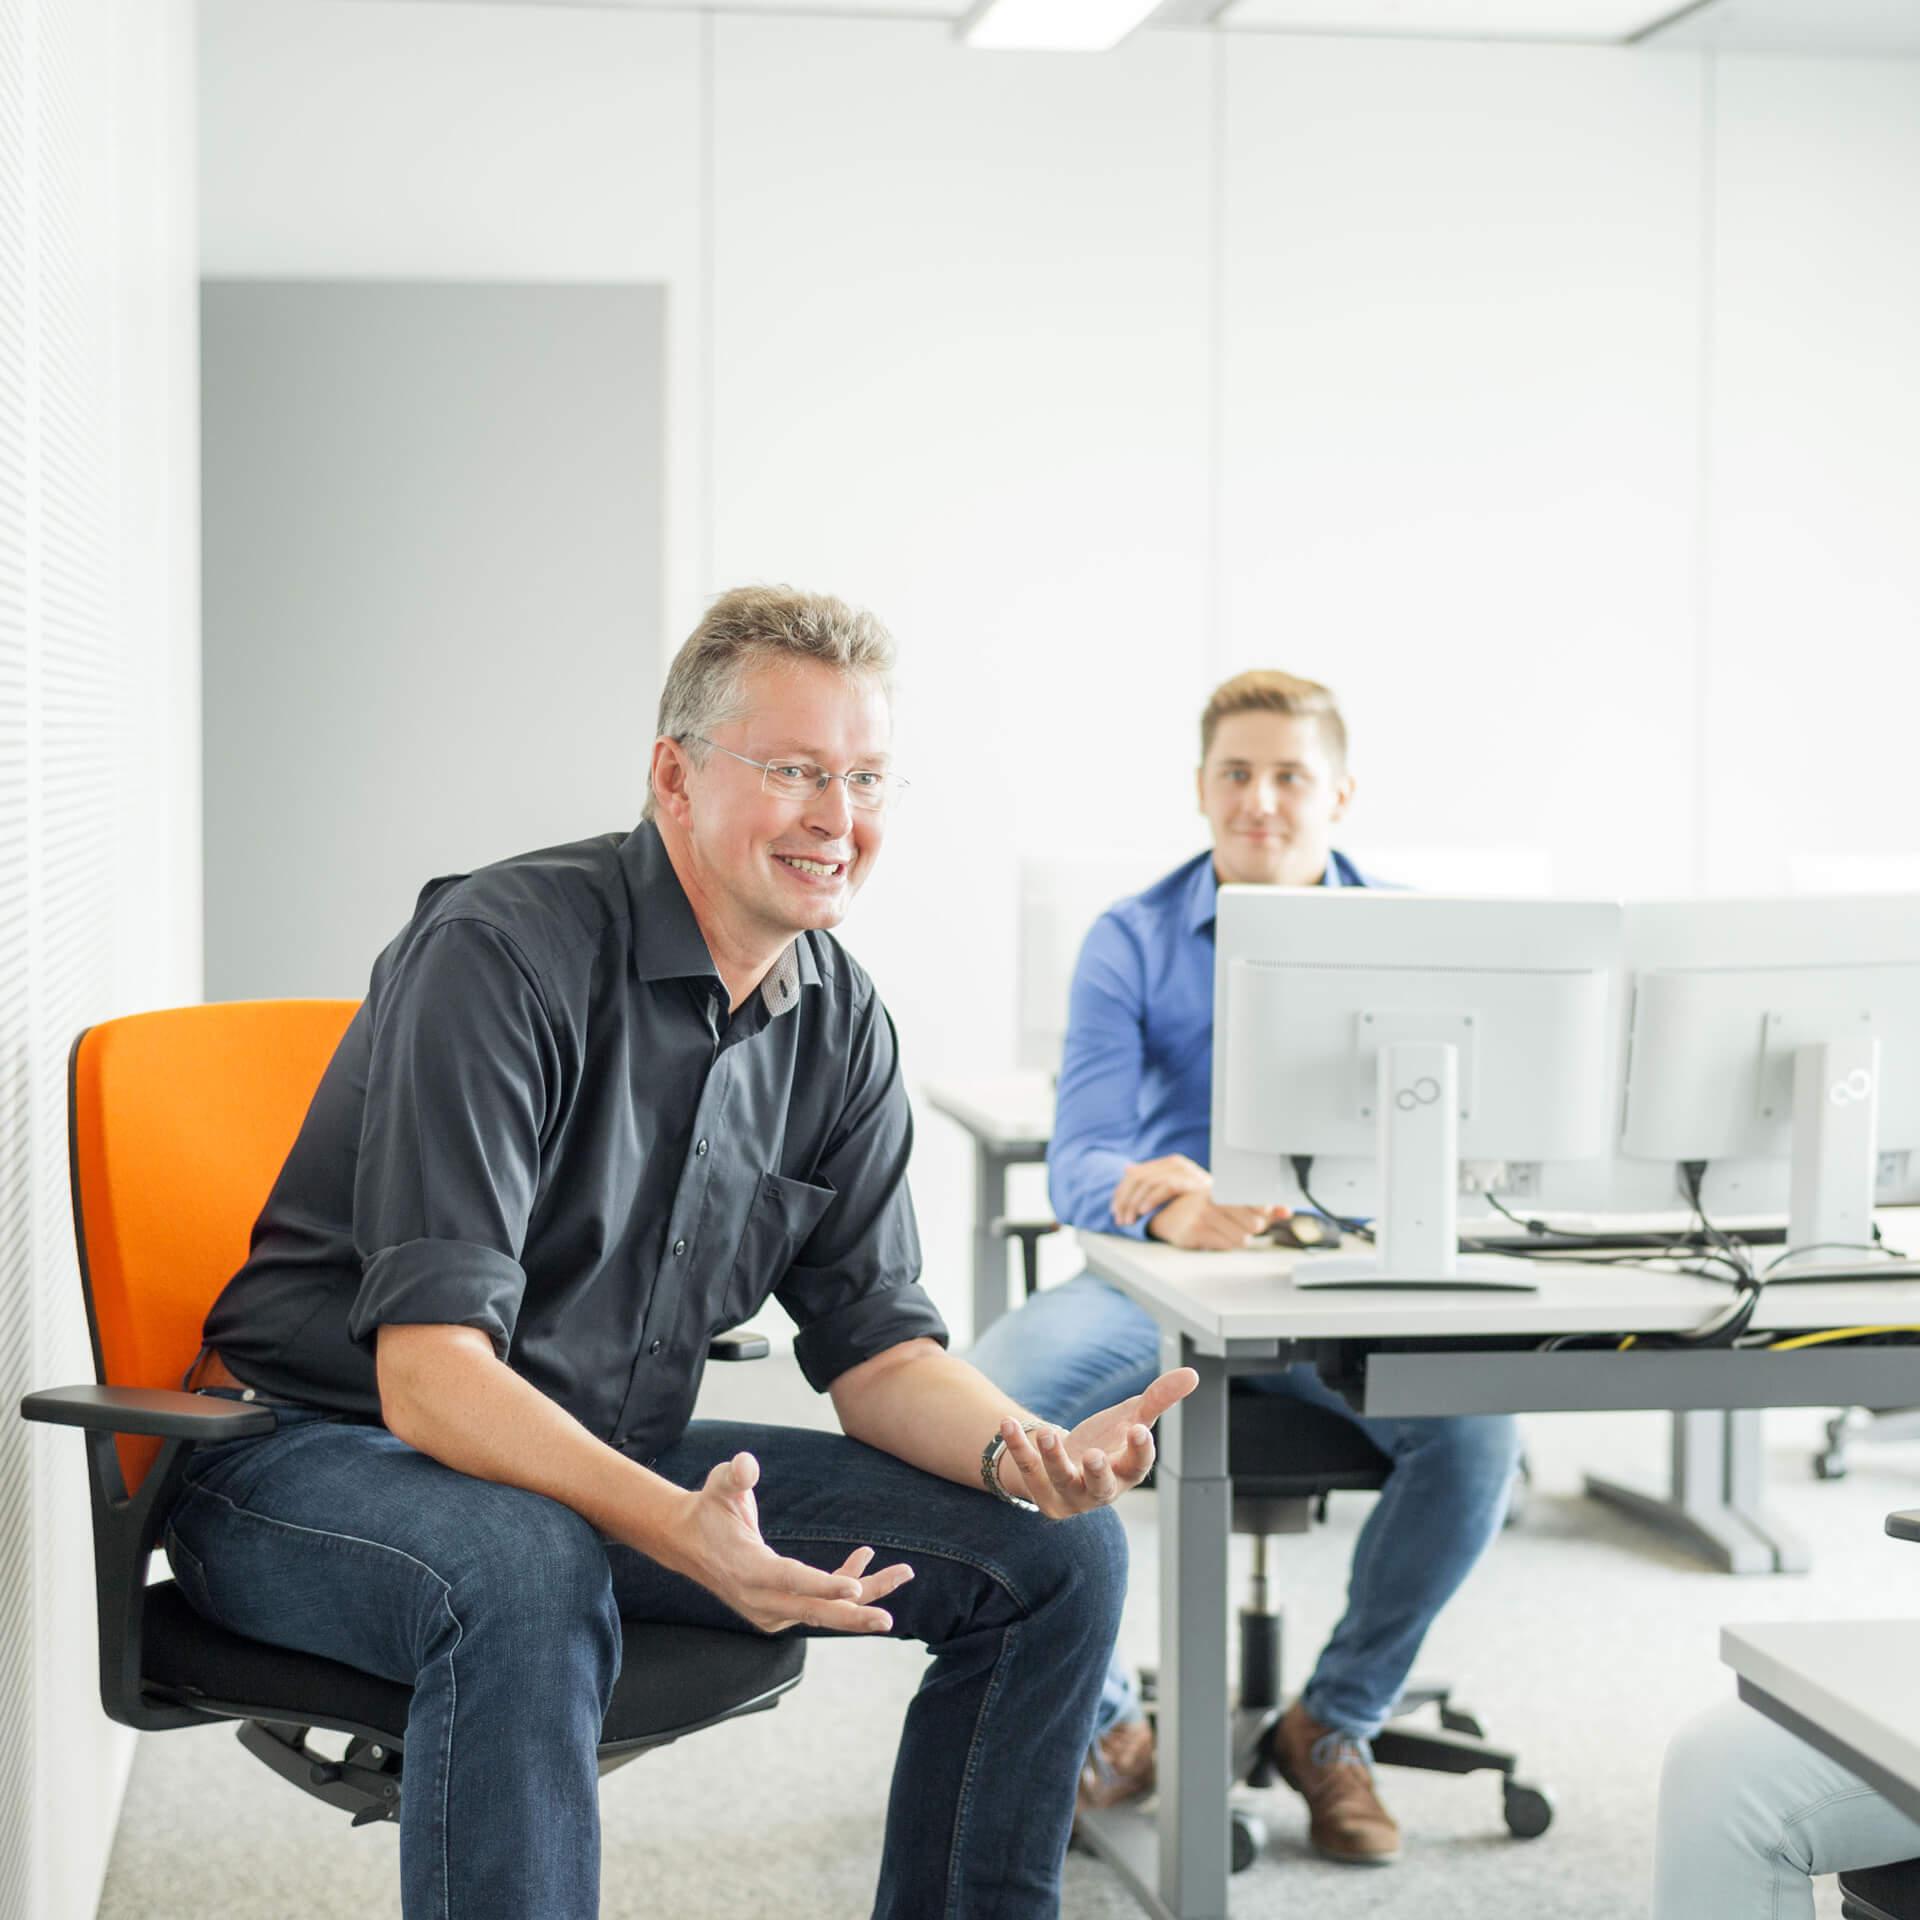 Mann in orangenem Bürostühl und zuhörender Mann am Bürotisch vor zwei Bildschirmen